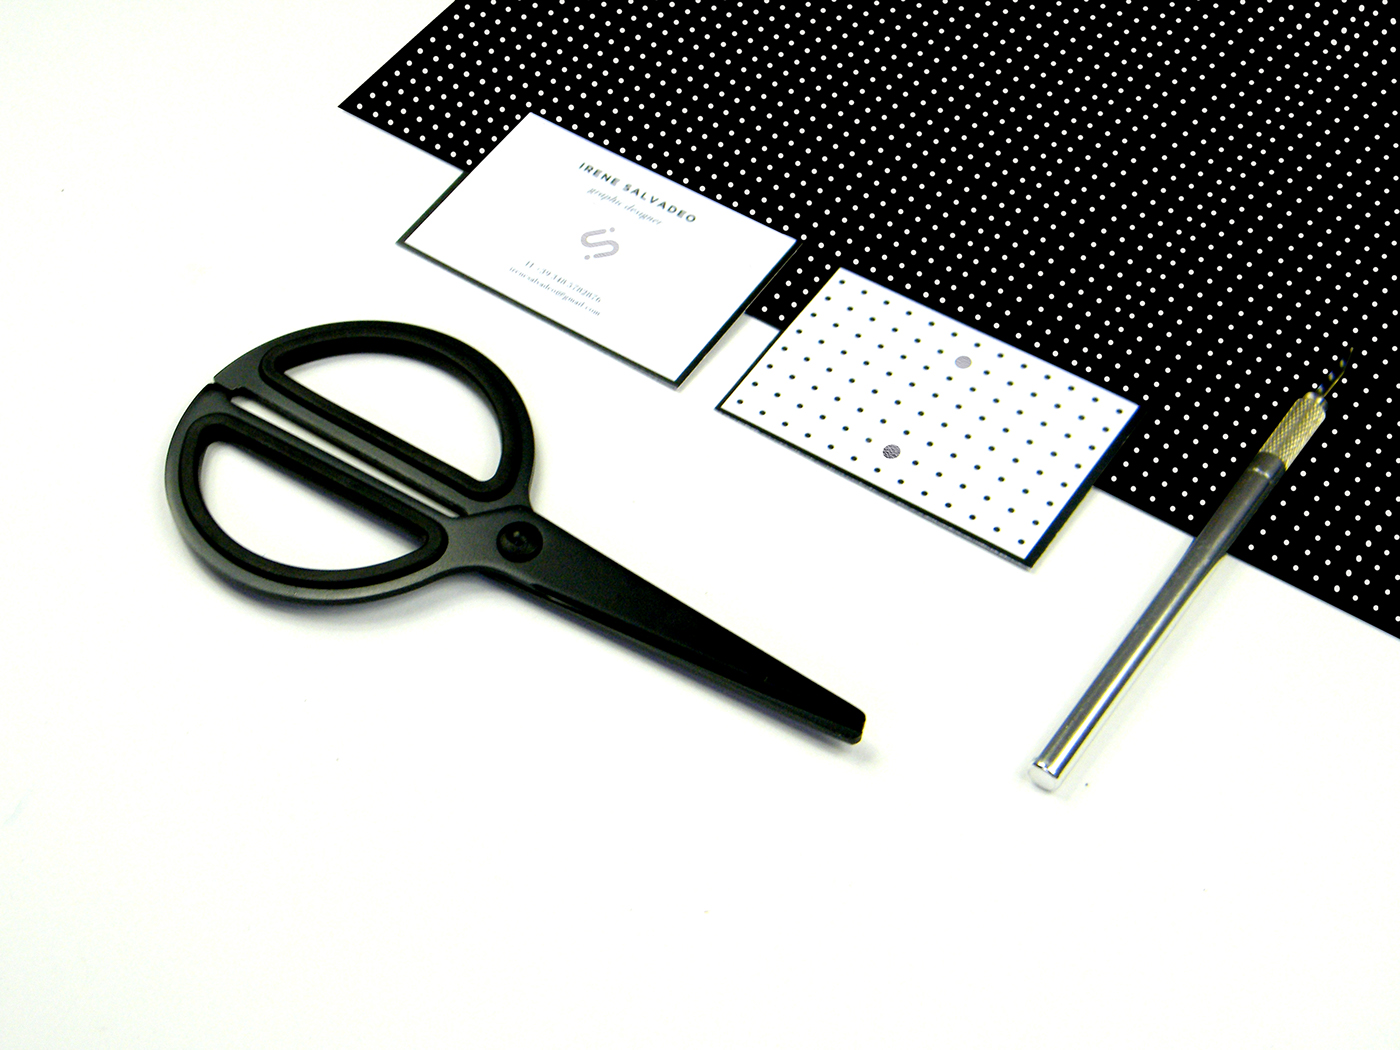 personalbraning portfolio design graphicdesign editorial handmade businesscard curriculum curriculumvitae paper color